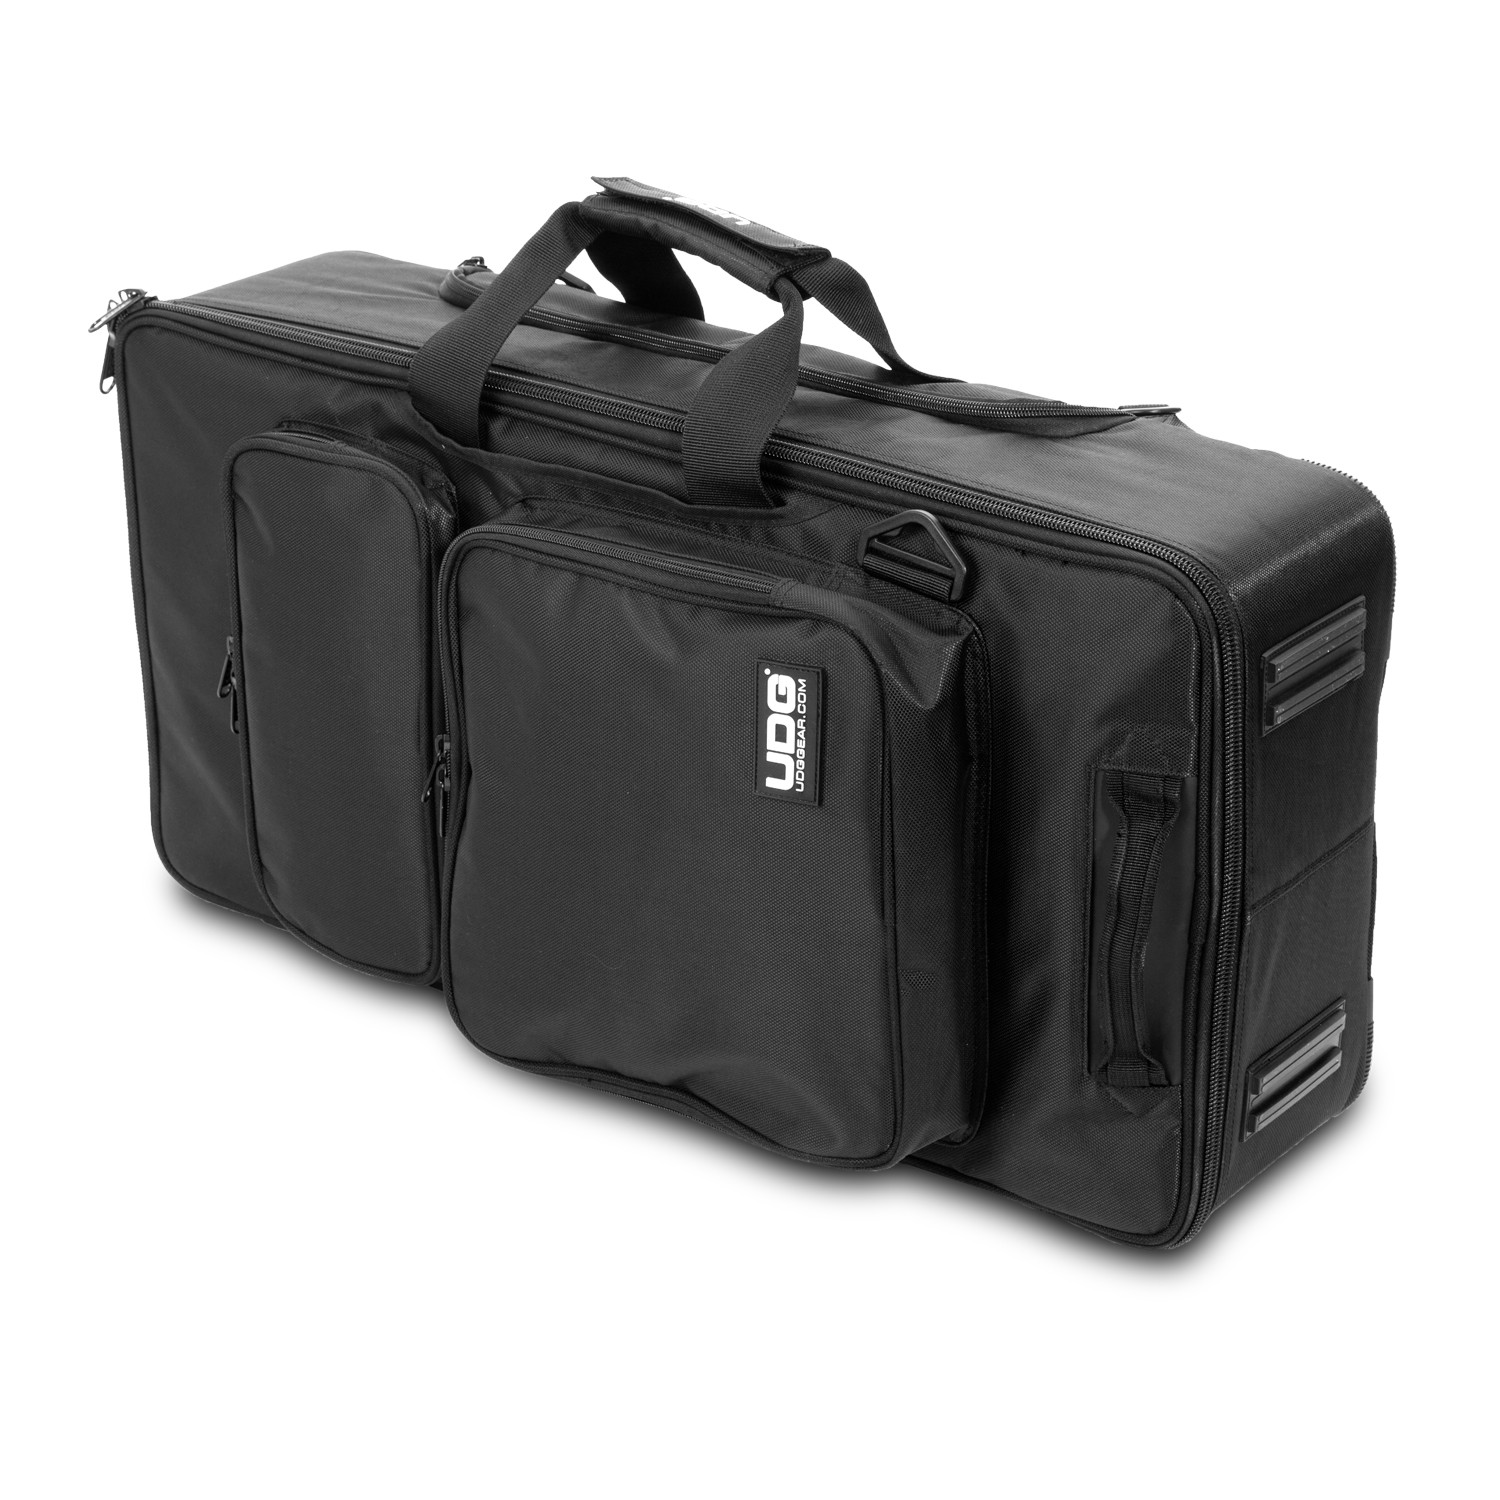 UDG Ultimate MIDI Controller Backpack Large Black/Orange Inside по цене 34 560.00 ₽